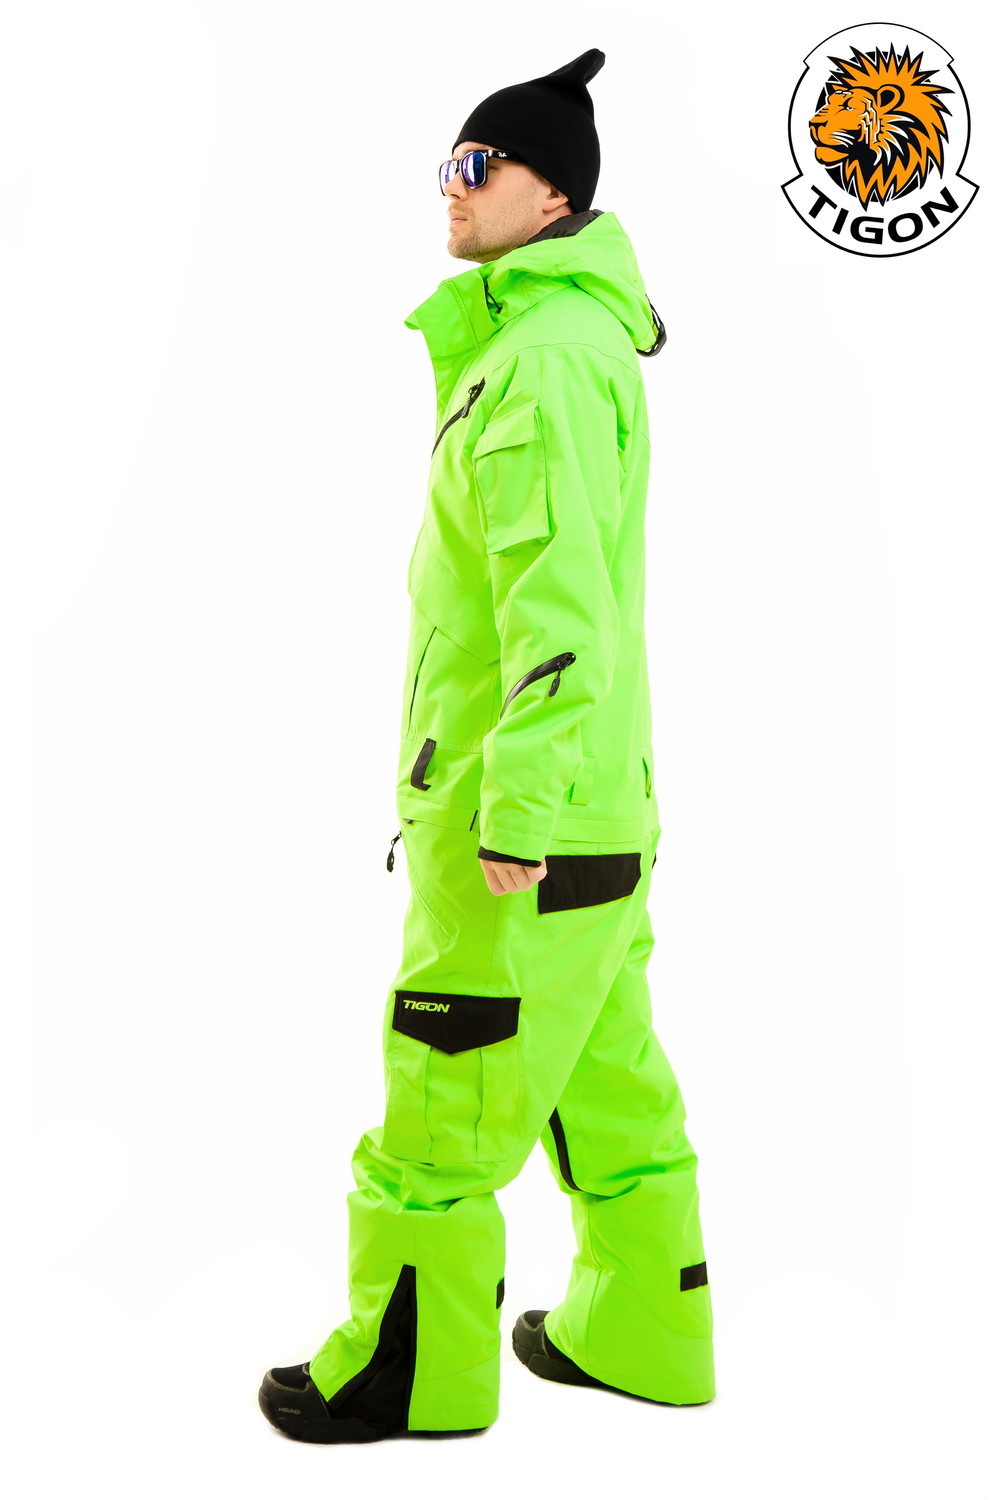 Men's one piece ski suit NEON - Webshop Snow-point.com. One piece suits ...